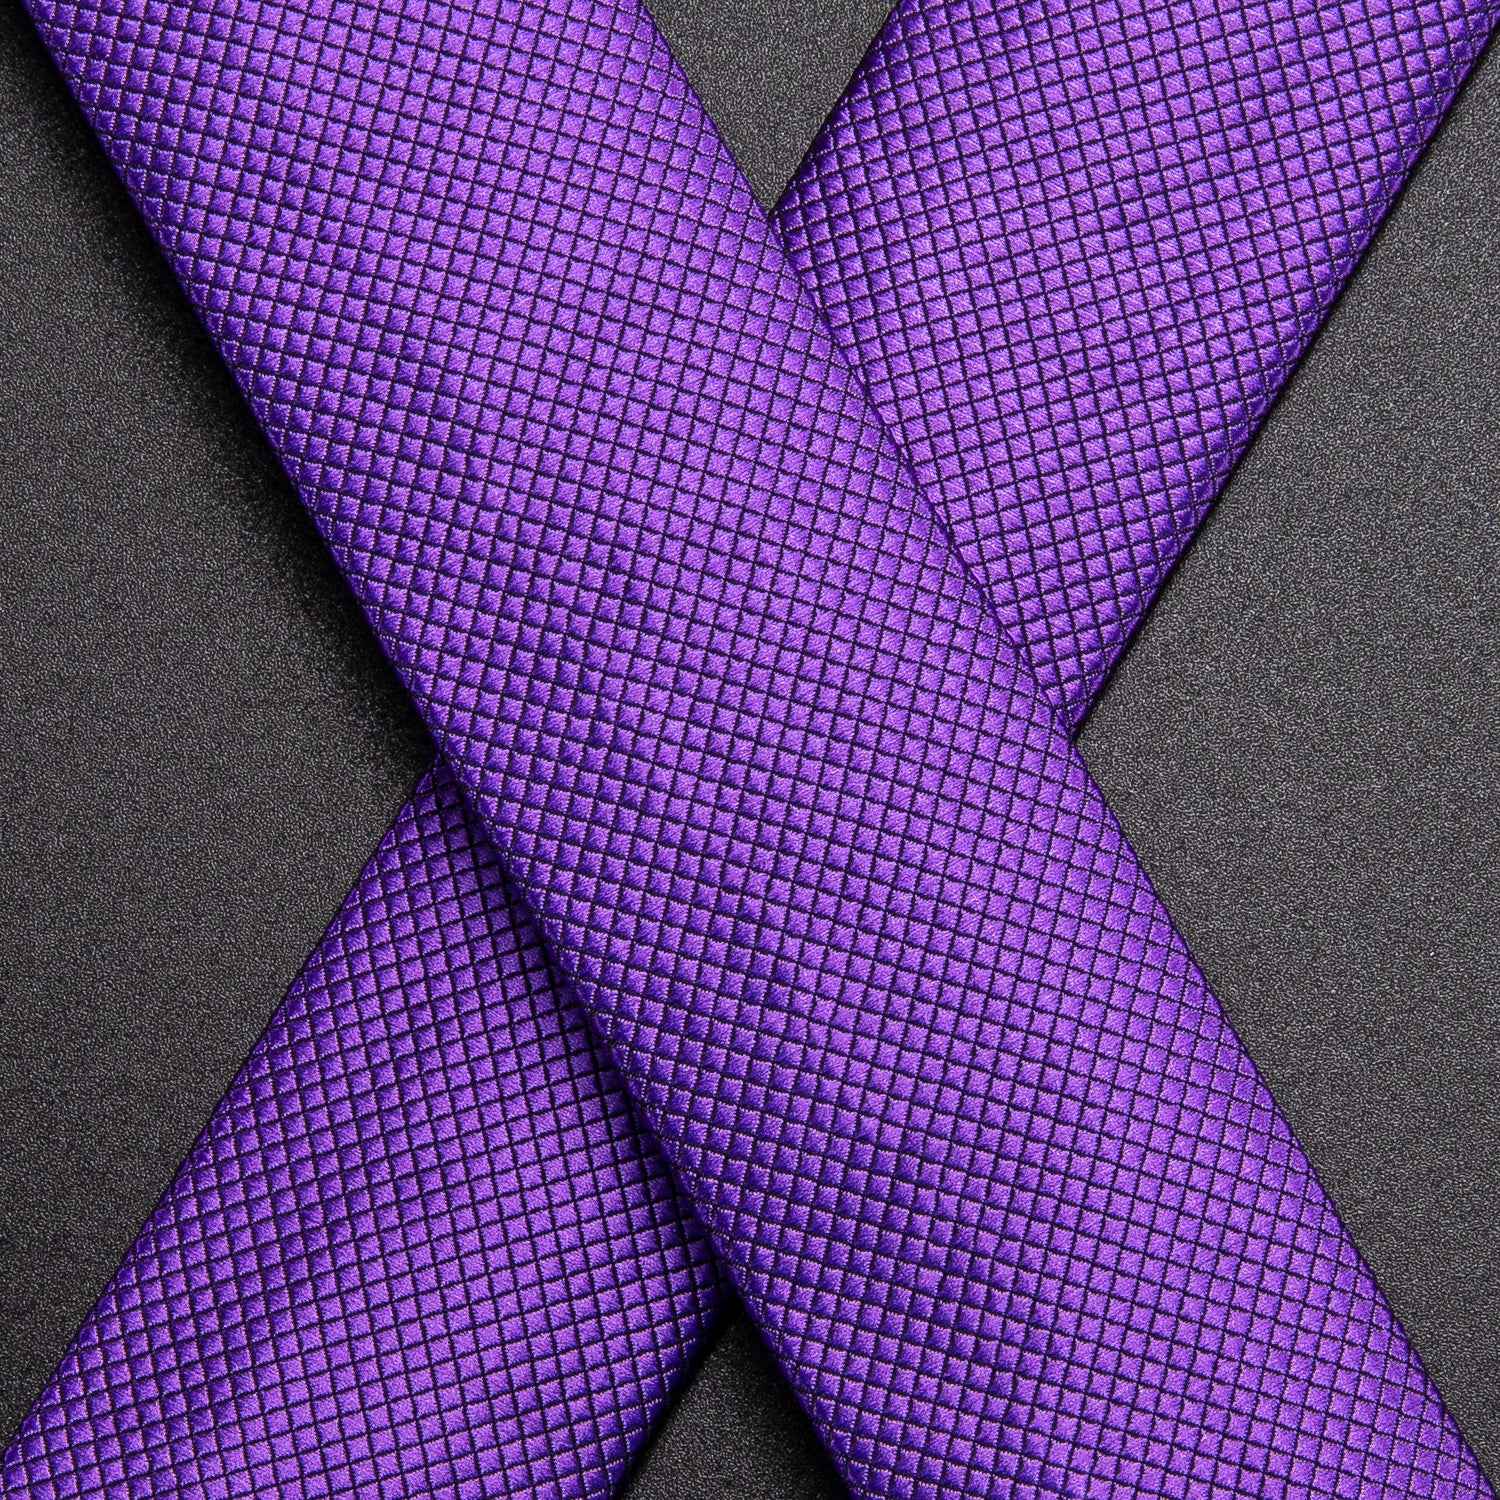 Purple Plaid Suspender Bowtie Hanky Cufflinks Set